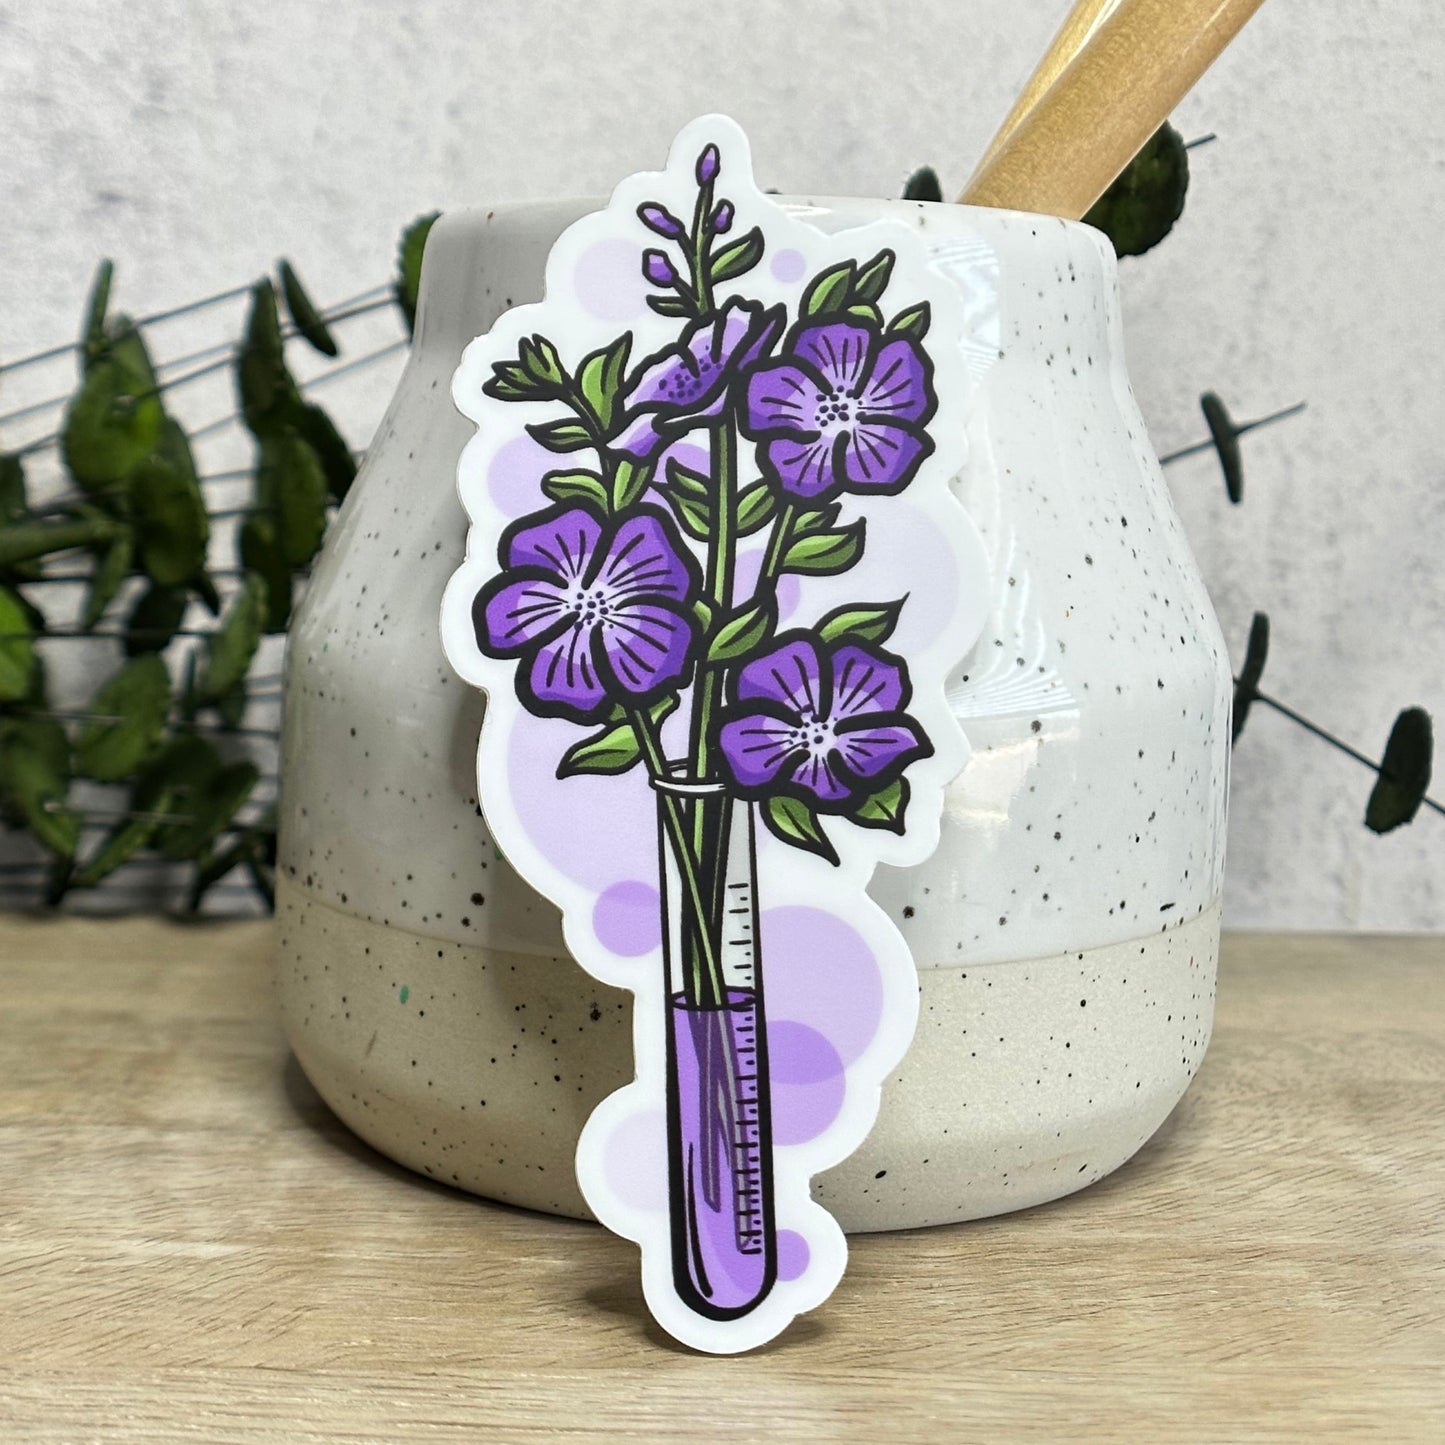 Test Tube Violet Floral Vinyl Sticker